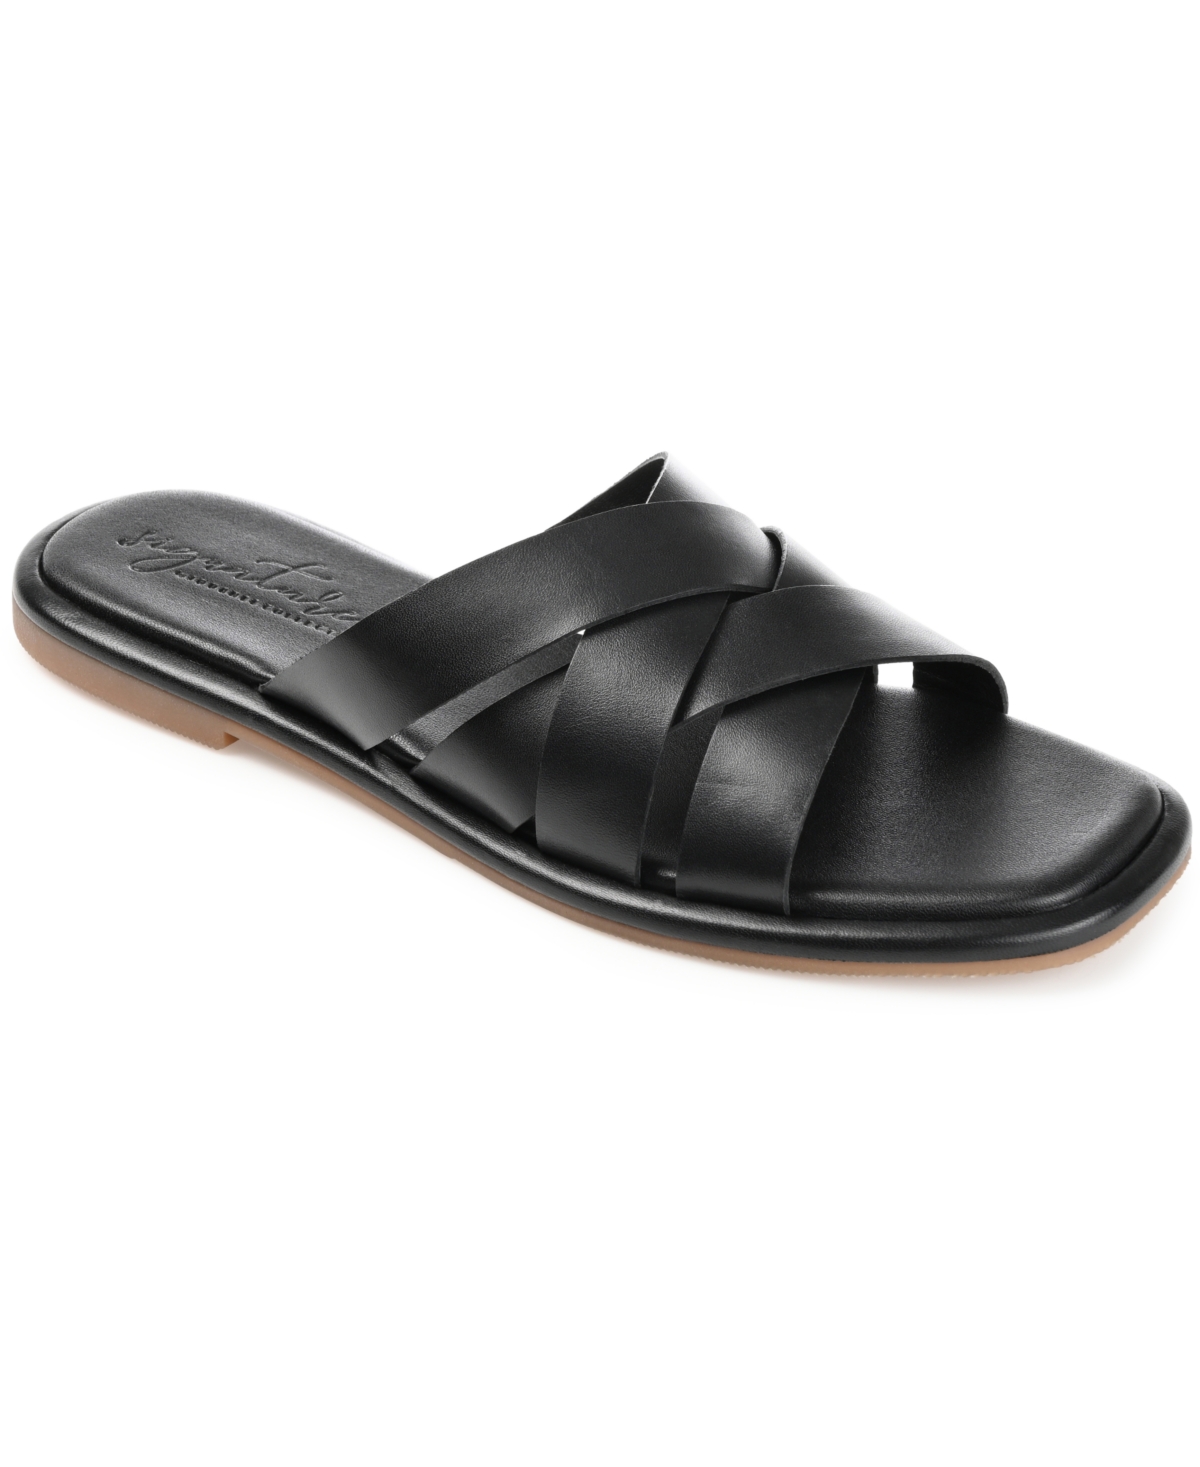 Women's Parkker Woven Sandals - Black